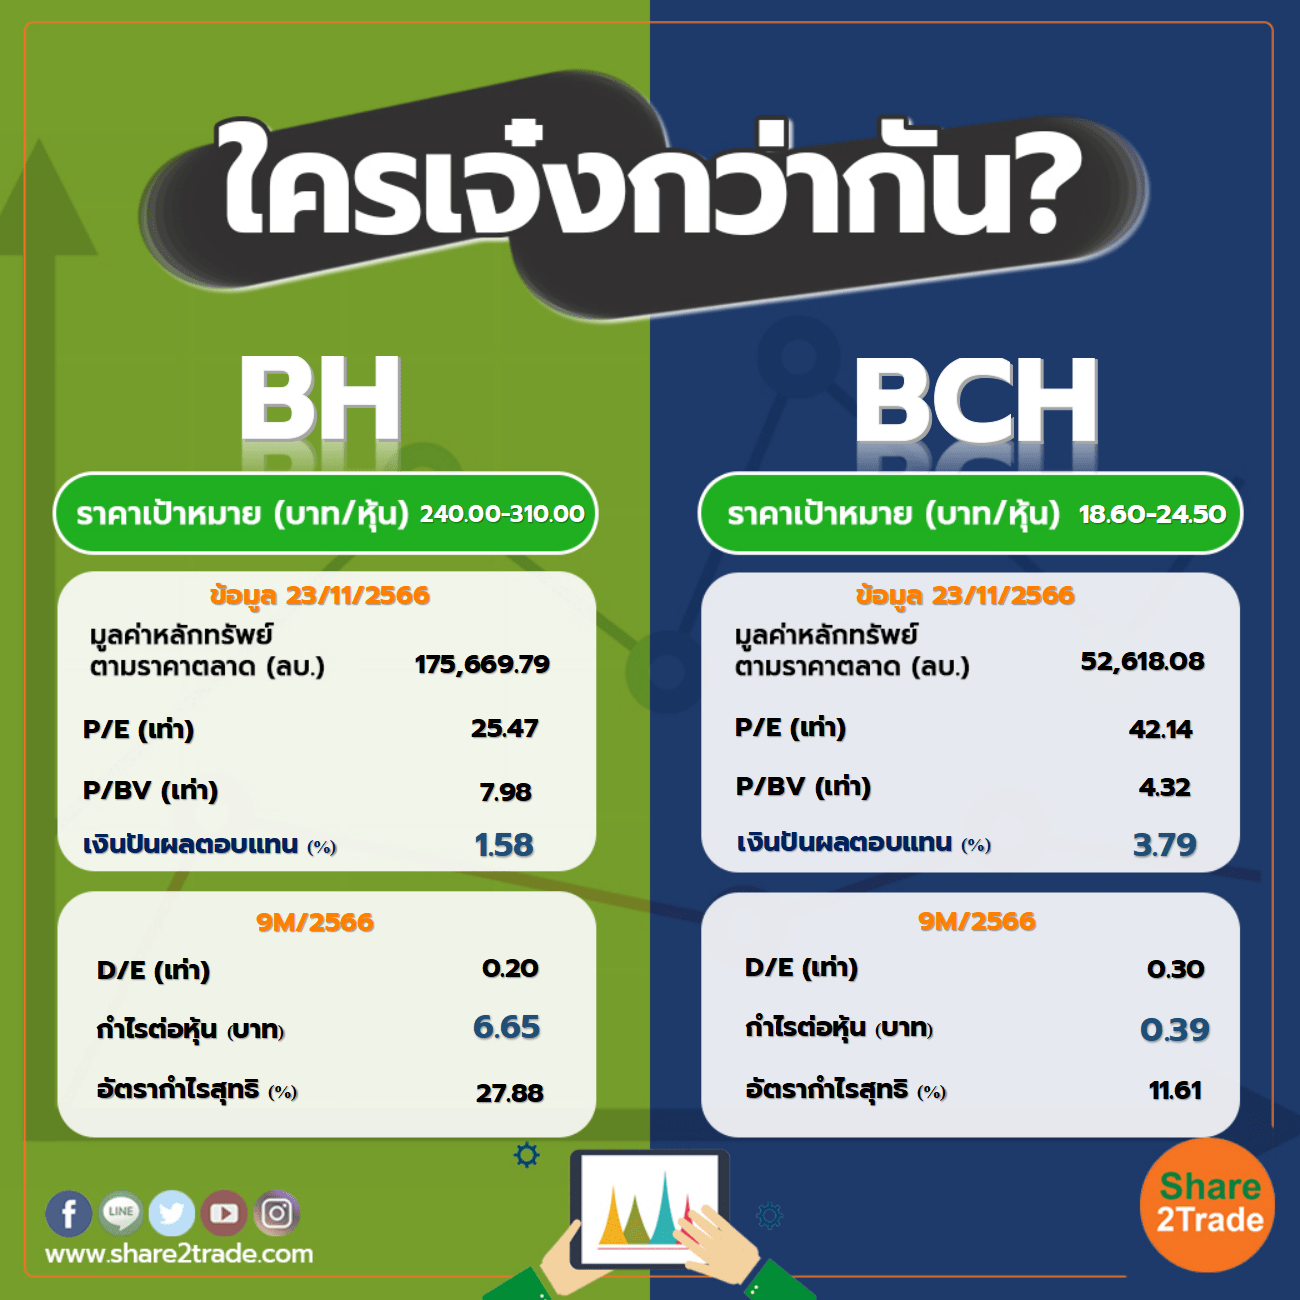 ใครเจ๋งกว่ากัน "BH" VS "BCH"